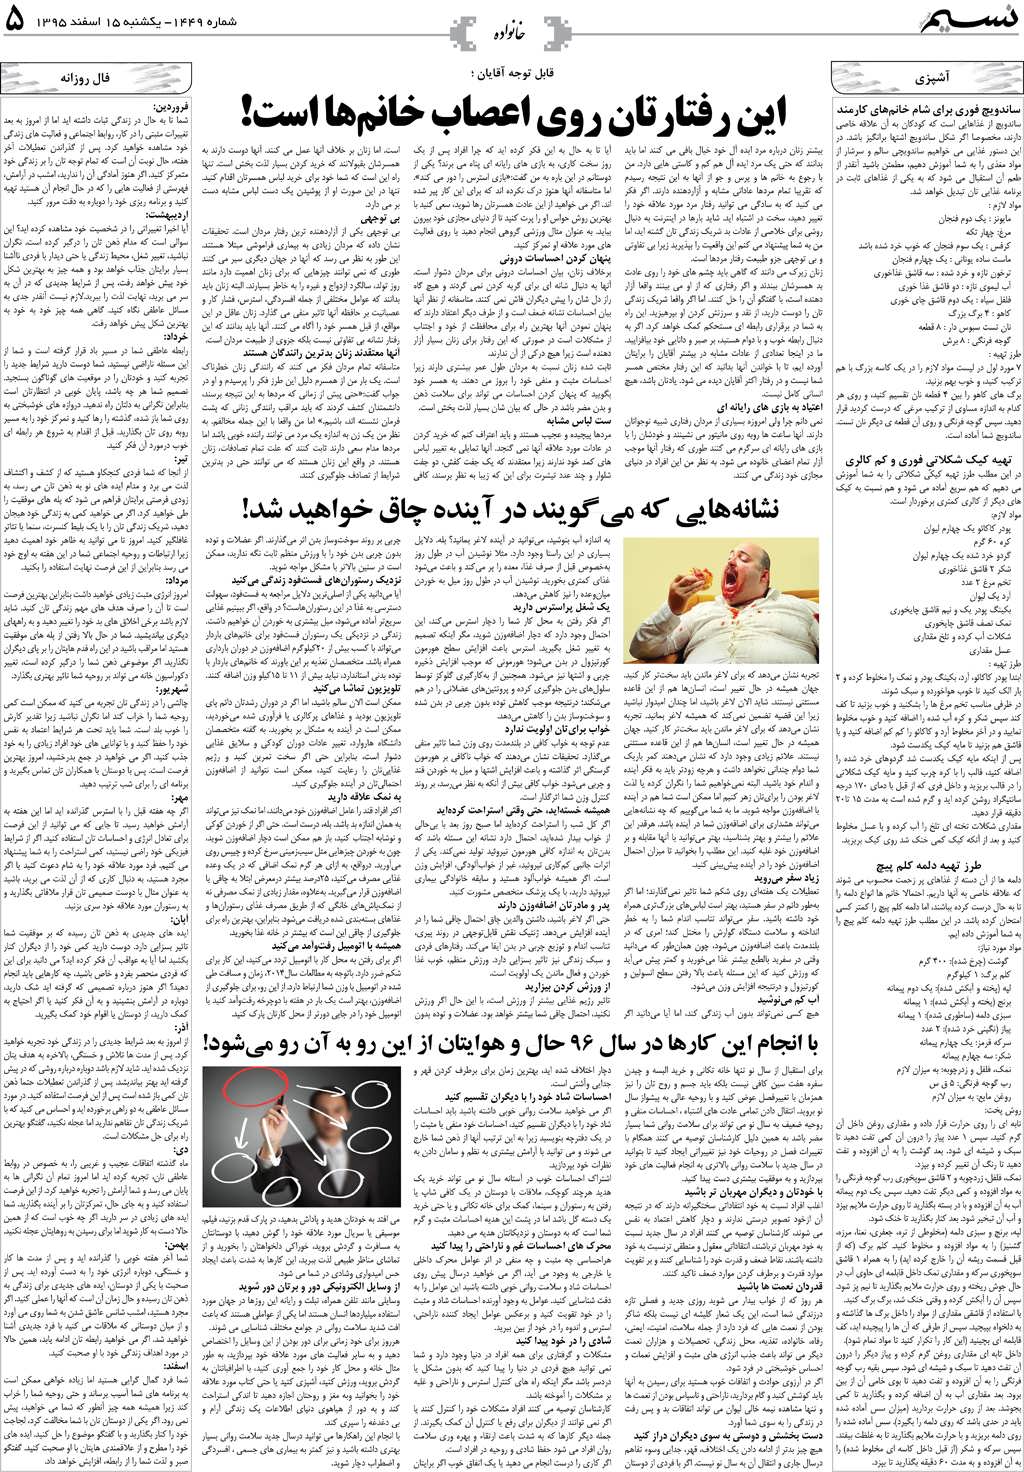 صفحه خانواده روزنامه نسیم شماره 1449